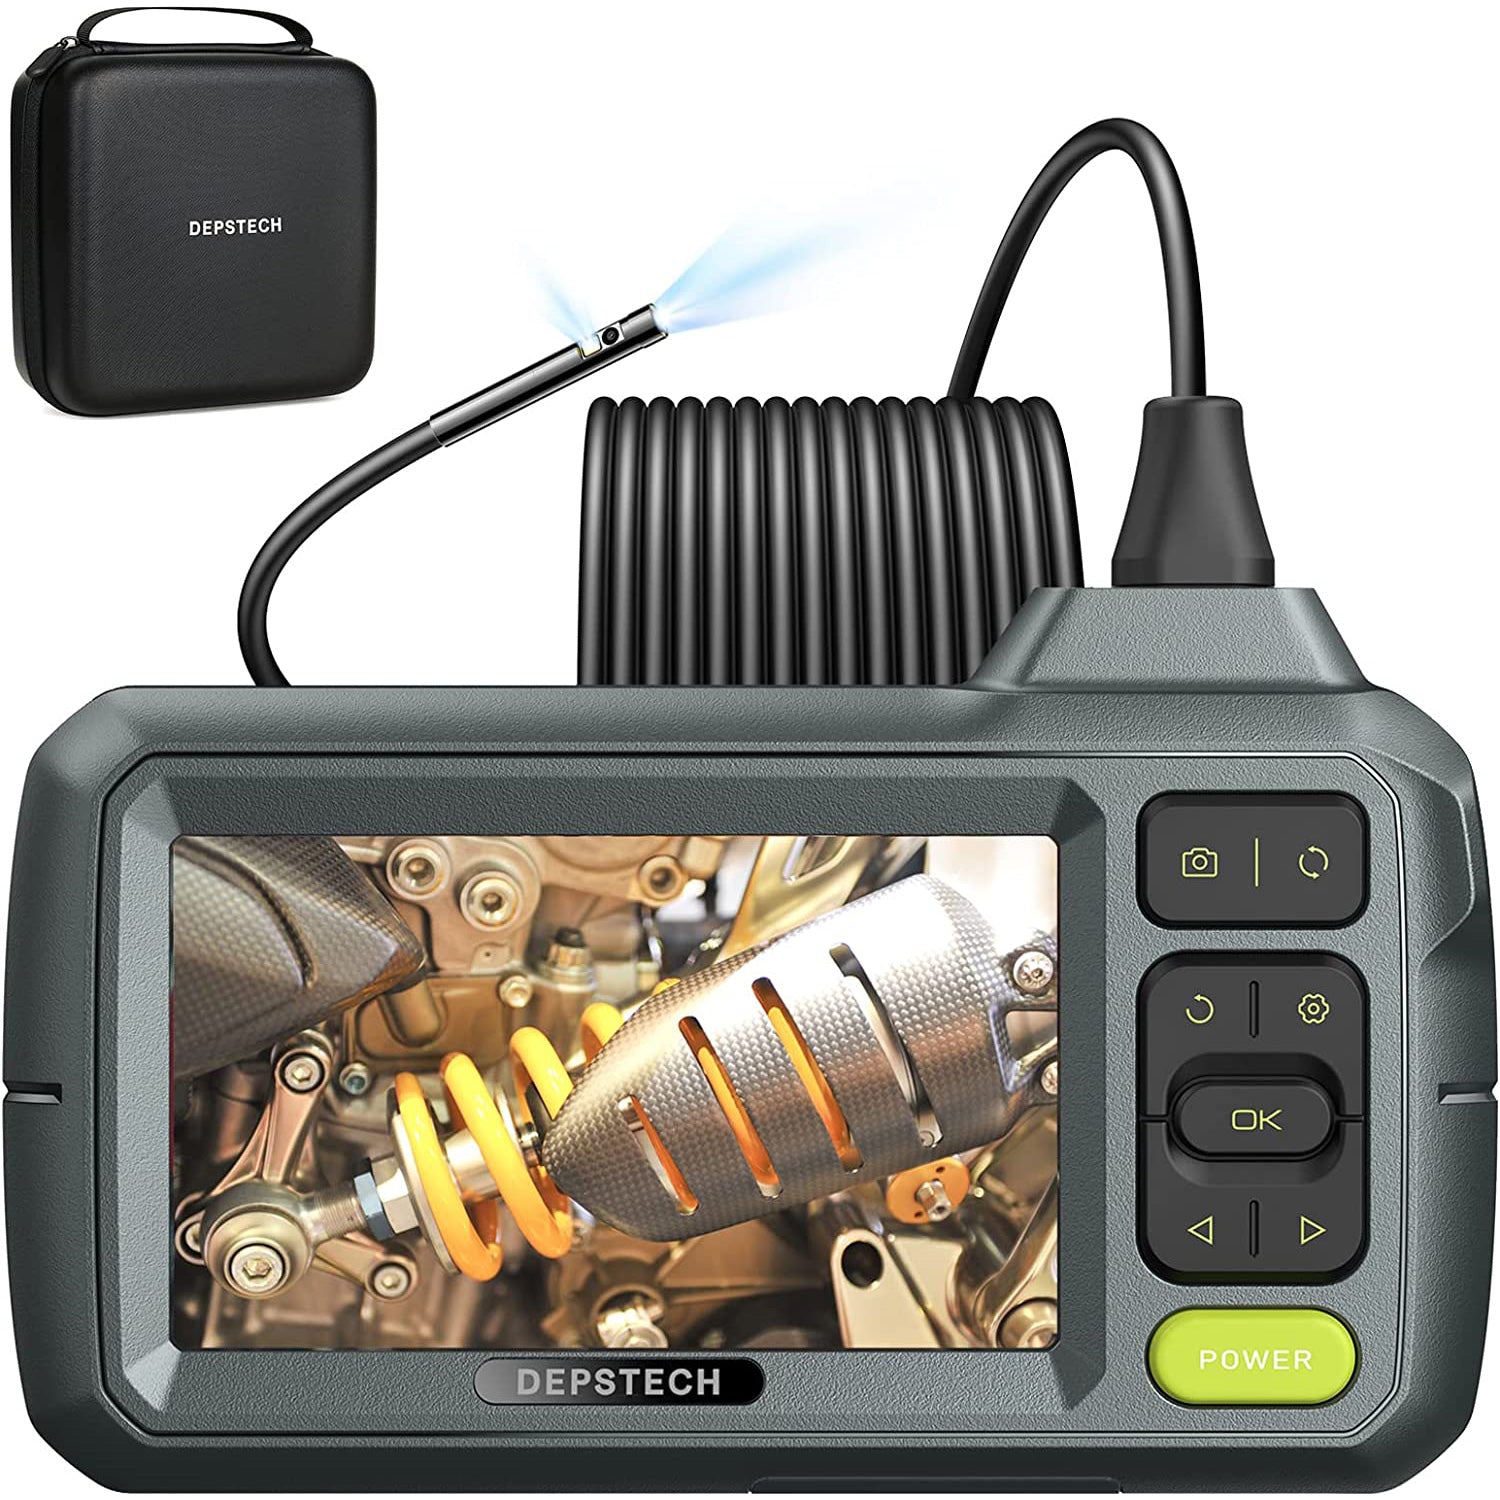 3en1 Endoscope Wifi à double objectif 8MM USB caméra d'inspection  électronique Flexible pour téléphone Android /